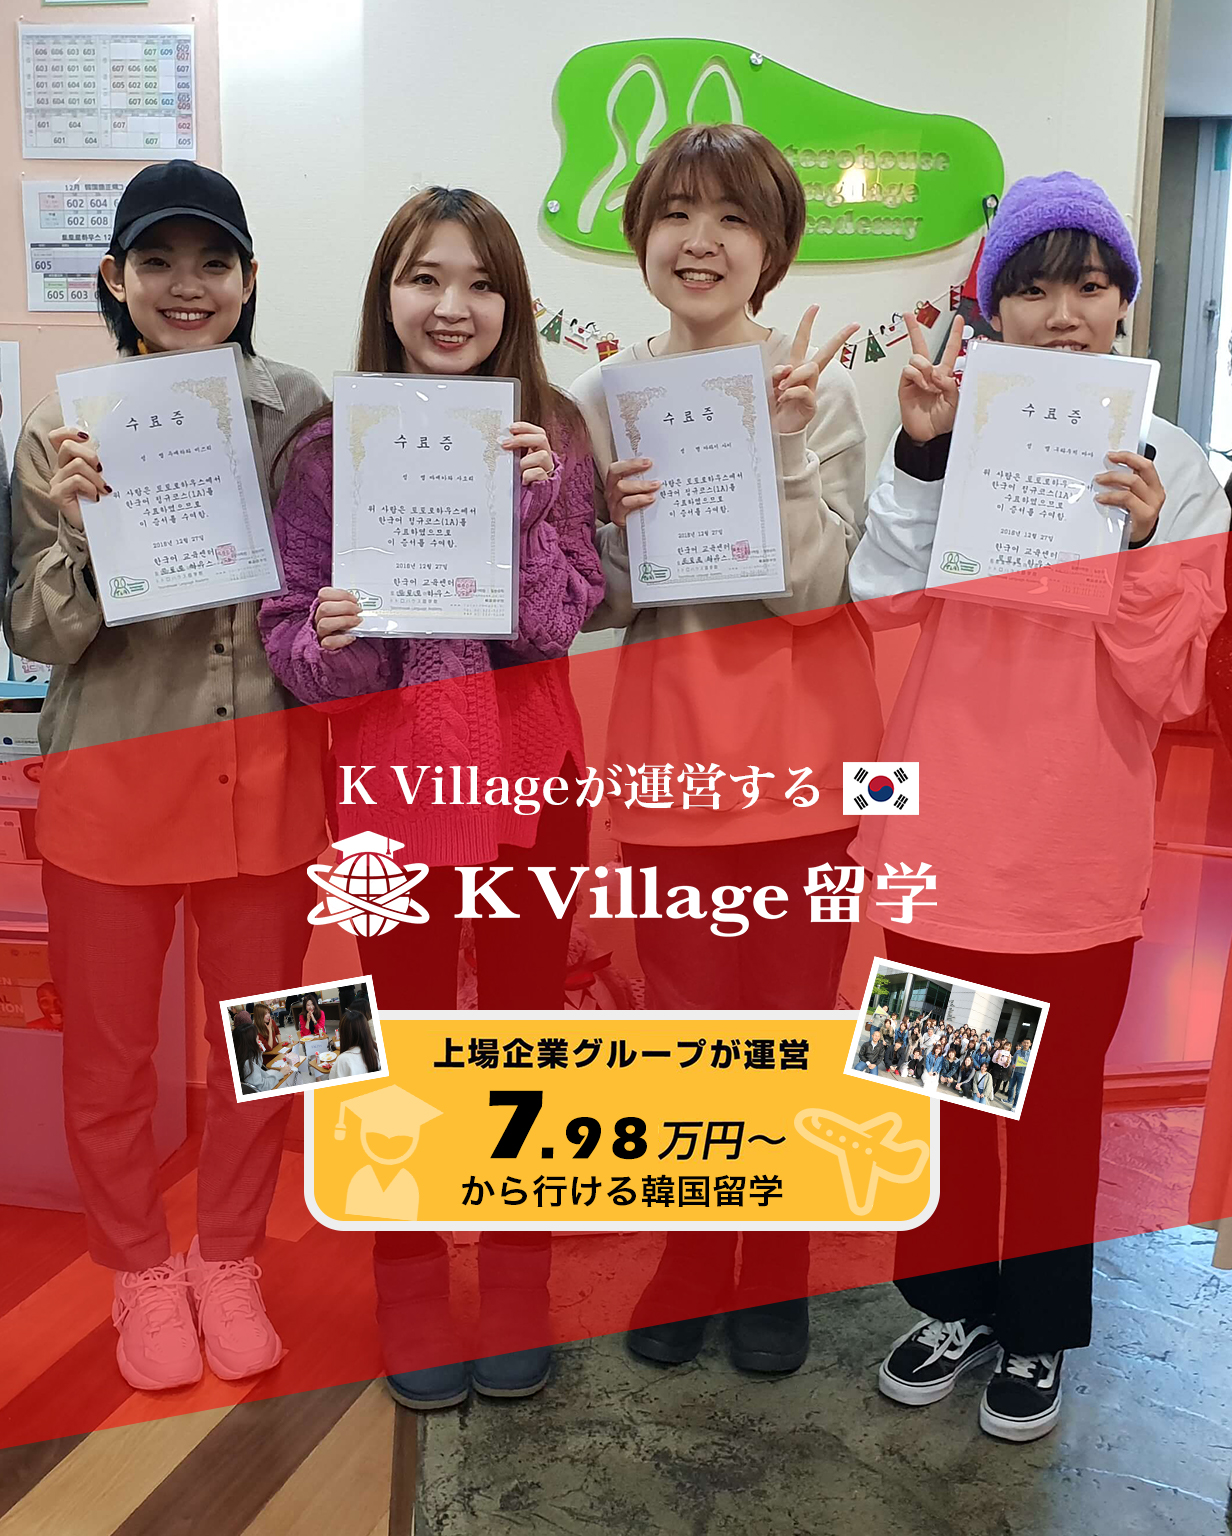 79 800円からの韓国留学 上場企業グループが運営する安心の韓国留学 K Village留学